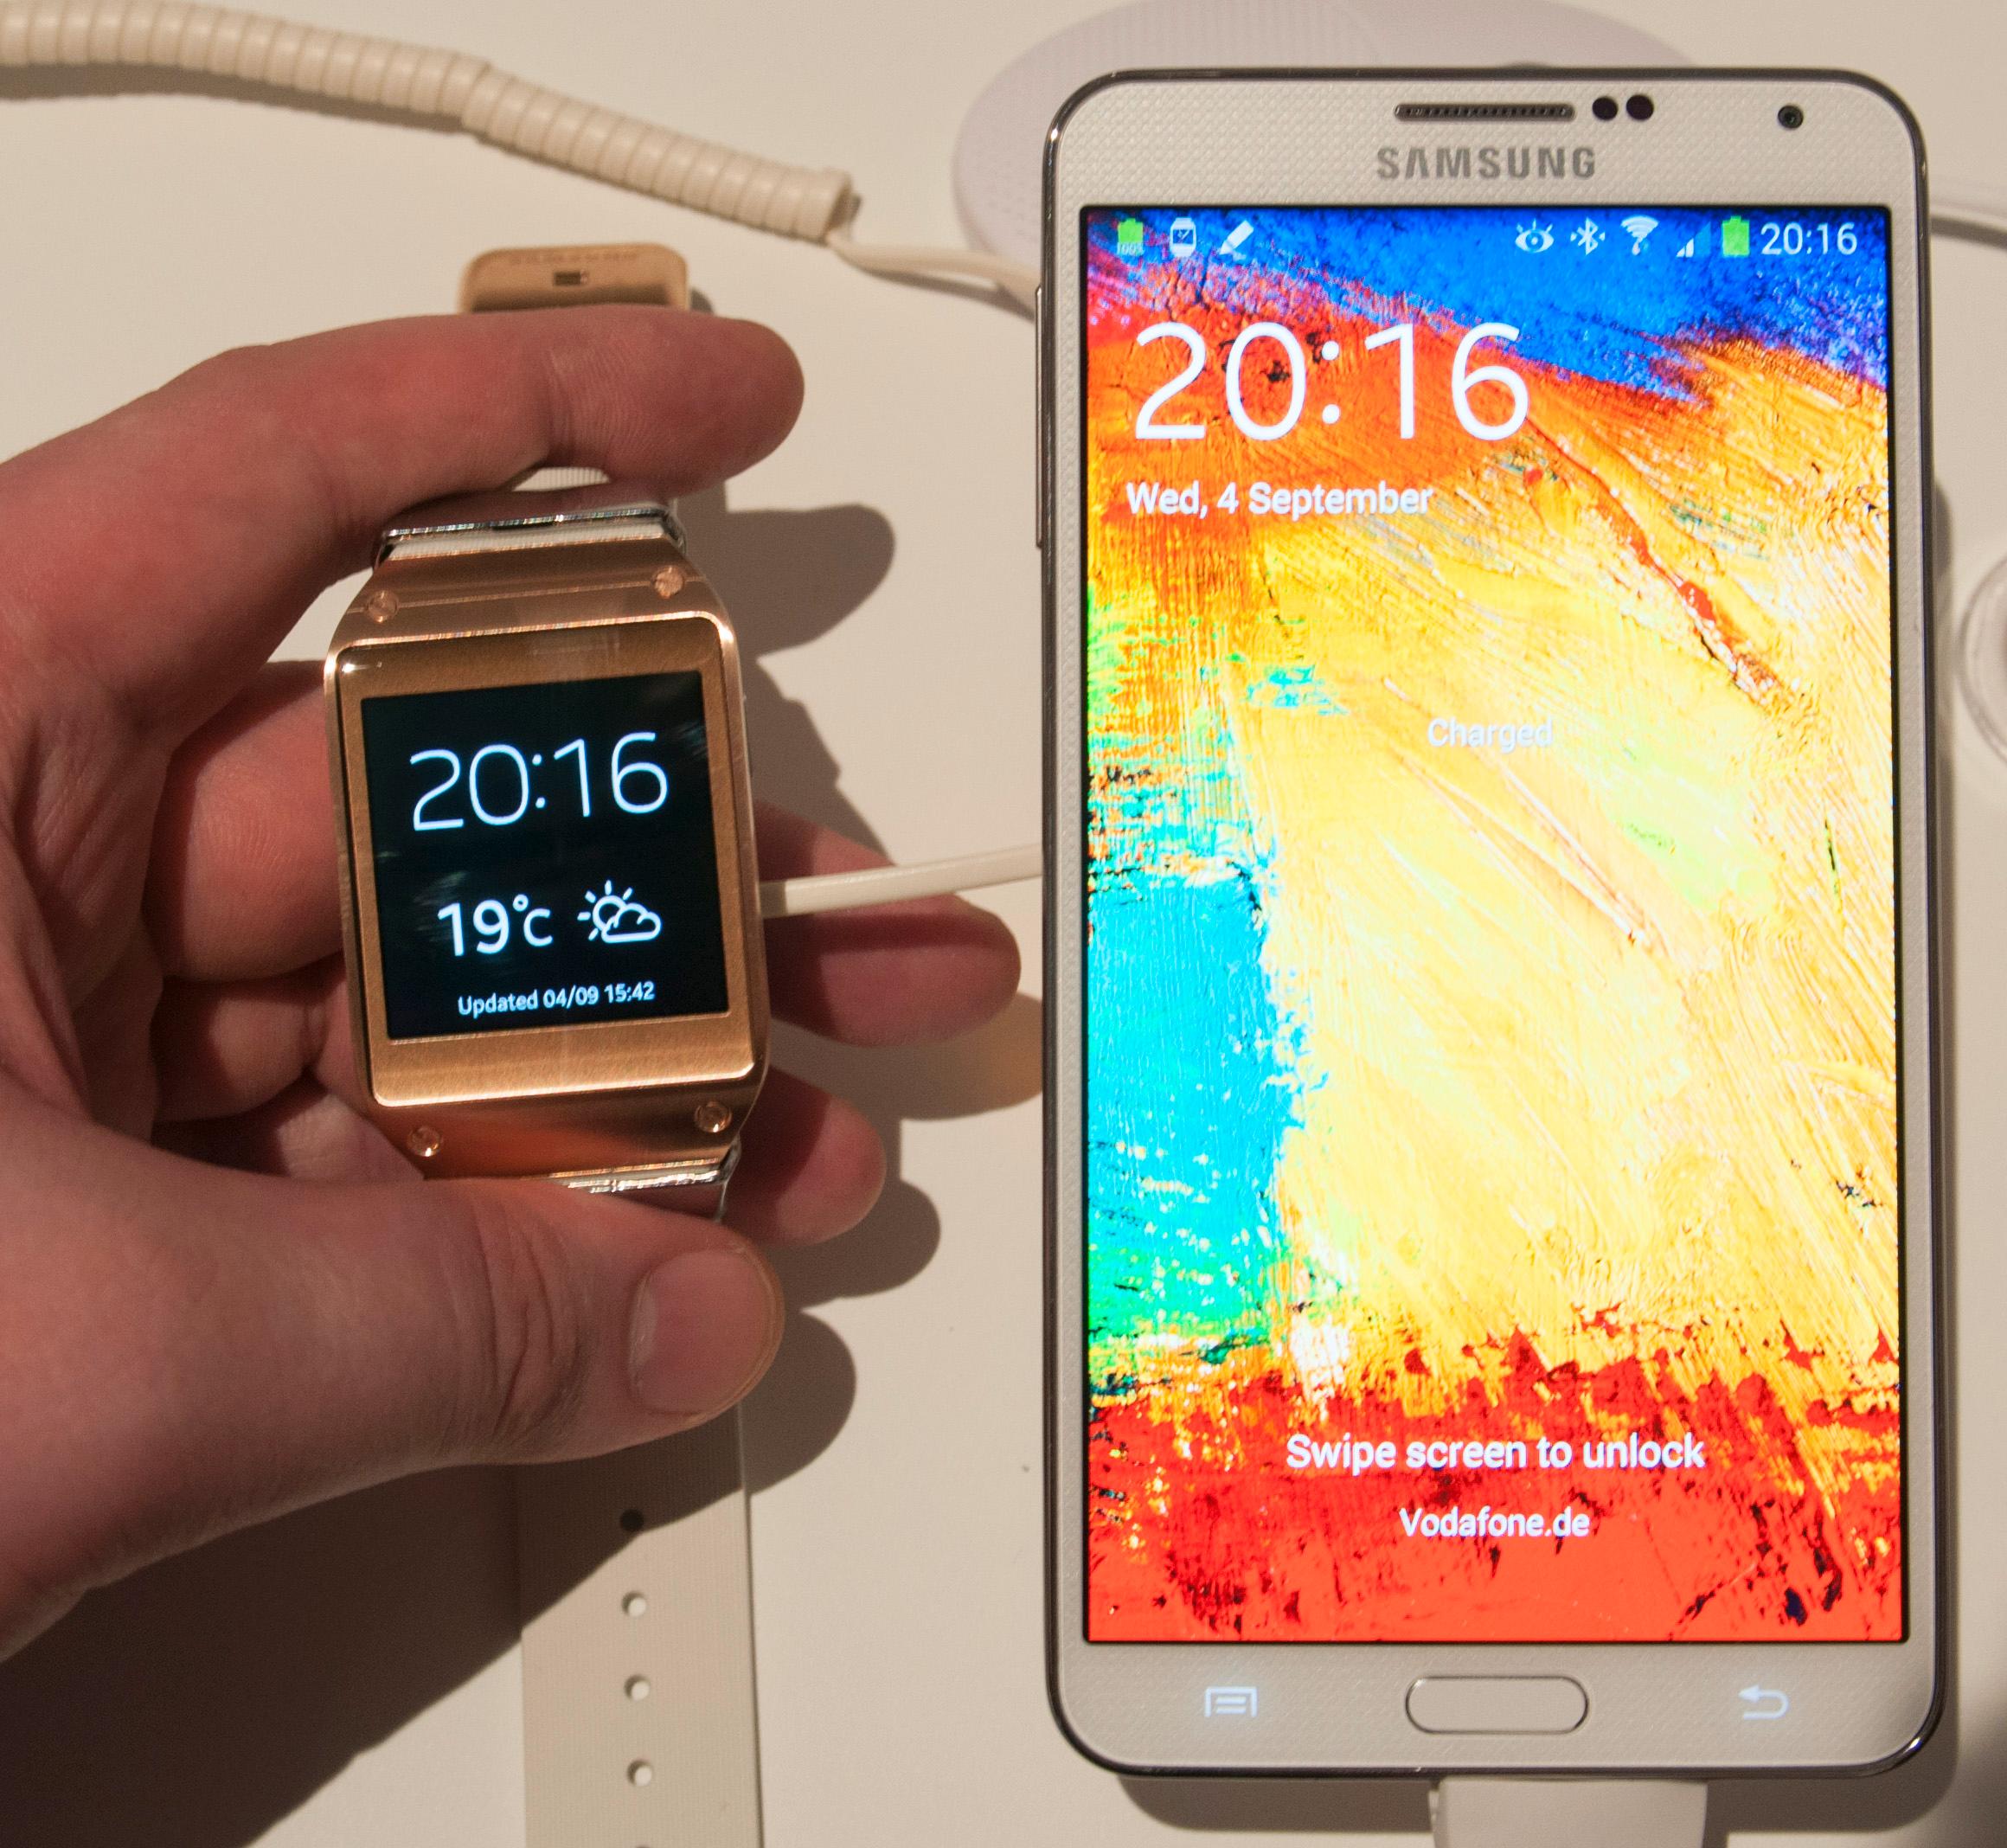 Samsung lanserte nylig sin første smartklokke, Galaxy Gear. Navnet er delvis delt med de kommende smartbrillende Gear Glass, om vi skal tro Eldar Murtazin.Foto: Finn Jarle Kvalheim, Amobil.no